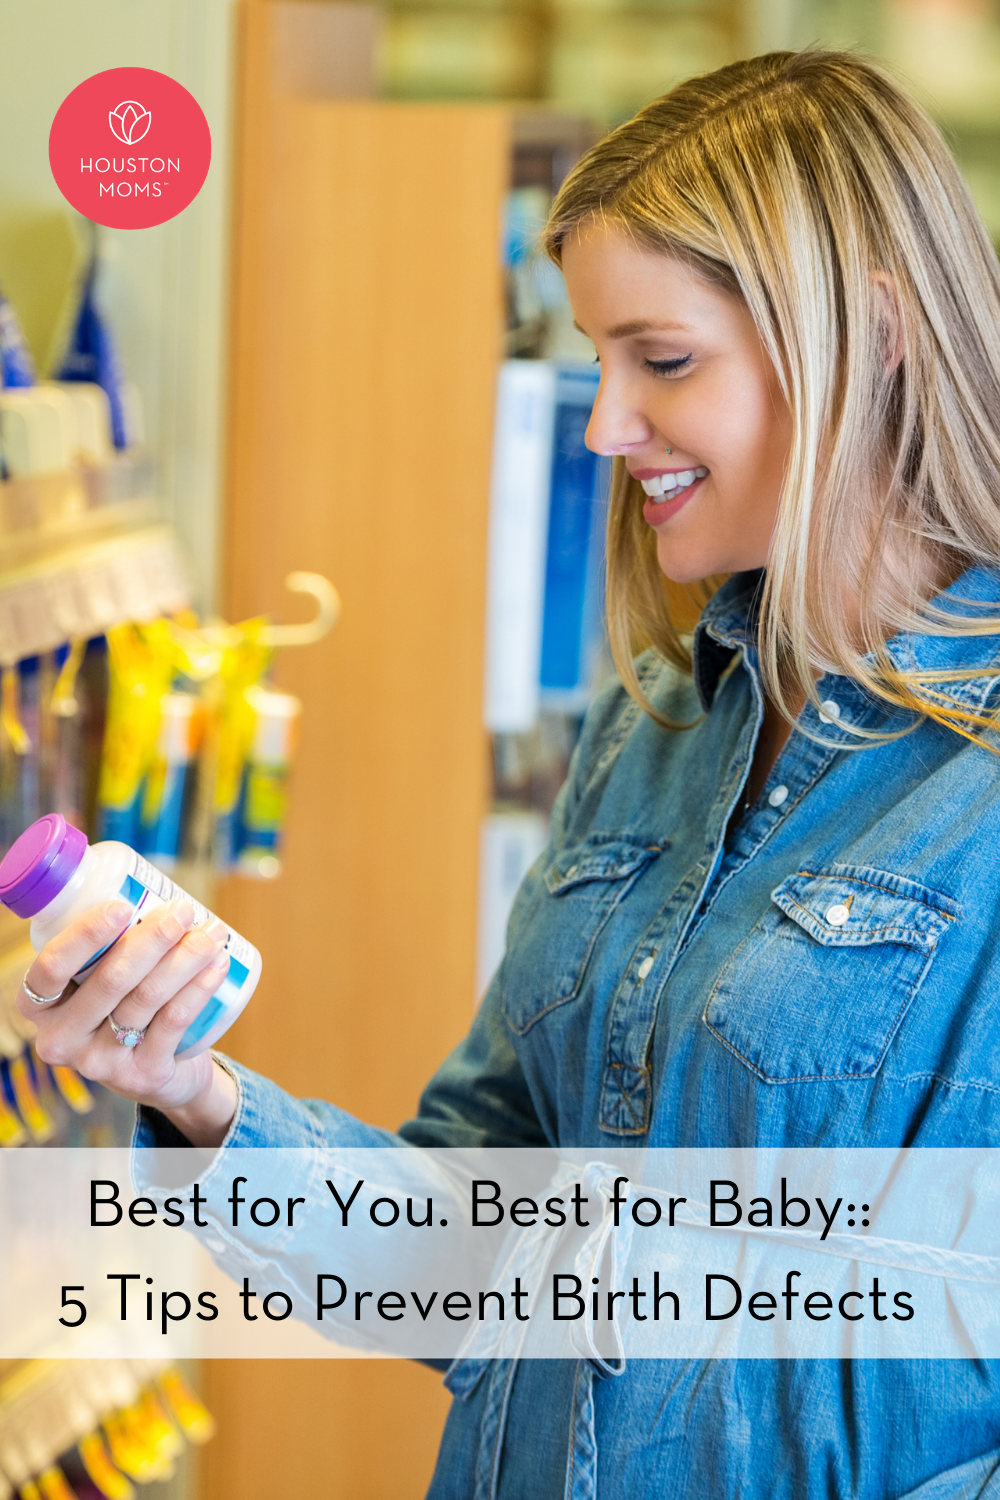 Houston Moms "Best for You. Best for Baby:: 5 Tips to Prevent Birth Defects" #houstonmoms #houstonmomsblog #momsaroundhouston